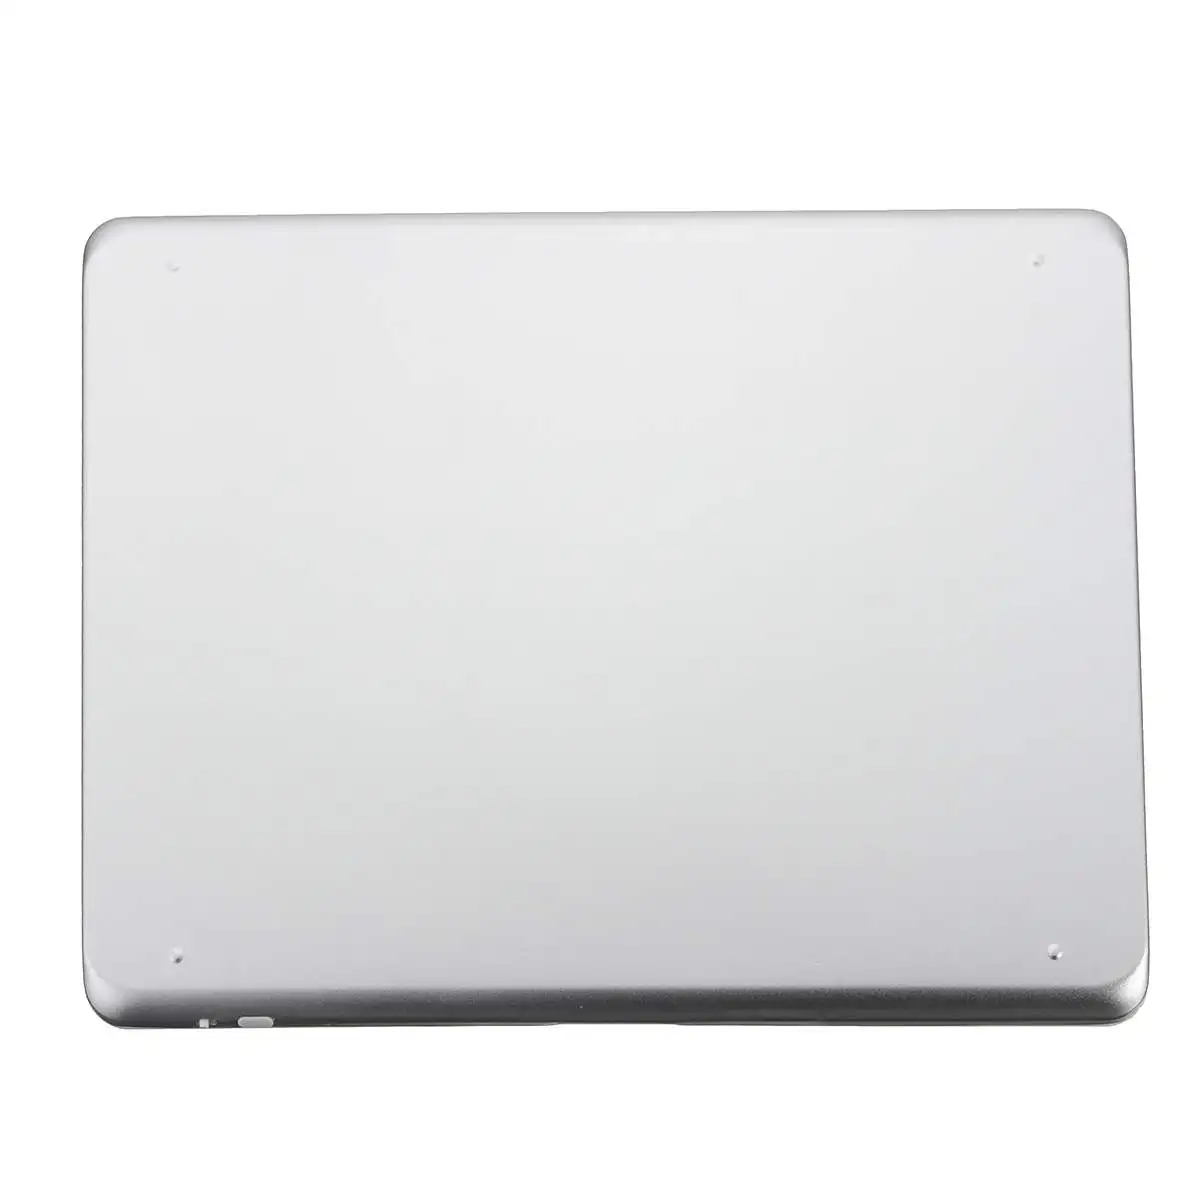 Алюминий Беспроводной bluetooth 3,0 Клавиатура чехол док-станция для iPad 2/3/4 Новый дизайн для iPad чехол дл iPad 234